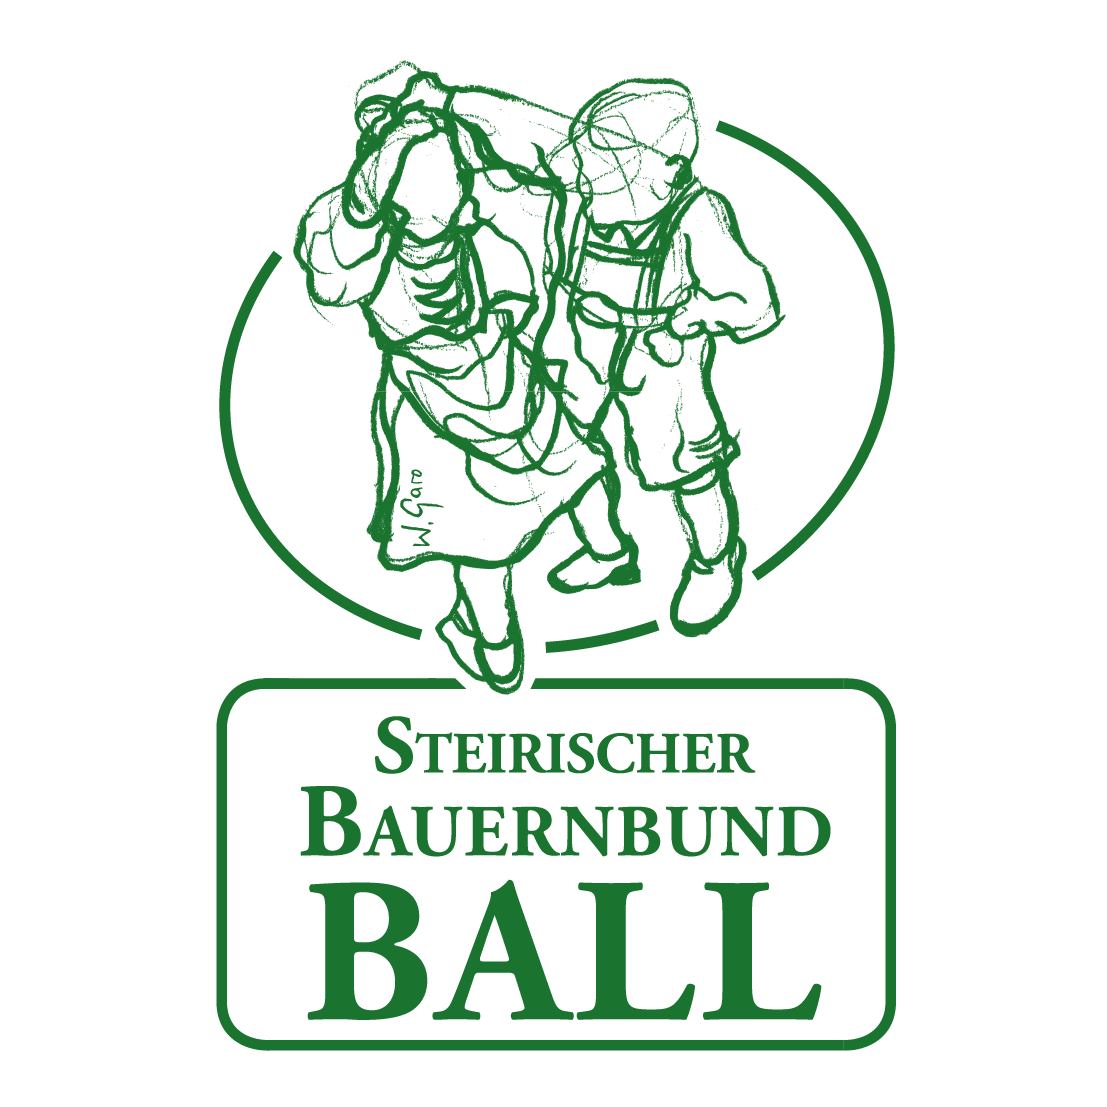 73. Steirischer Bauernbundball